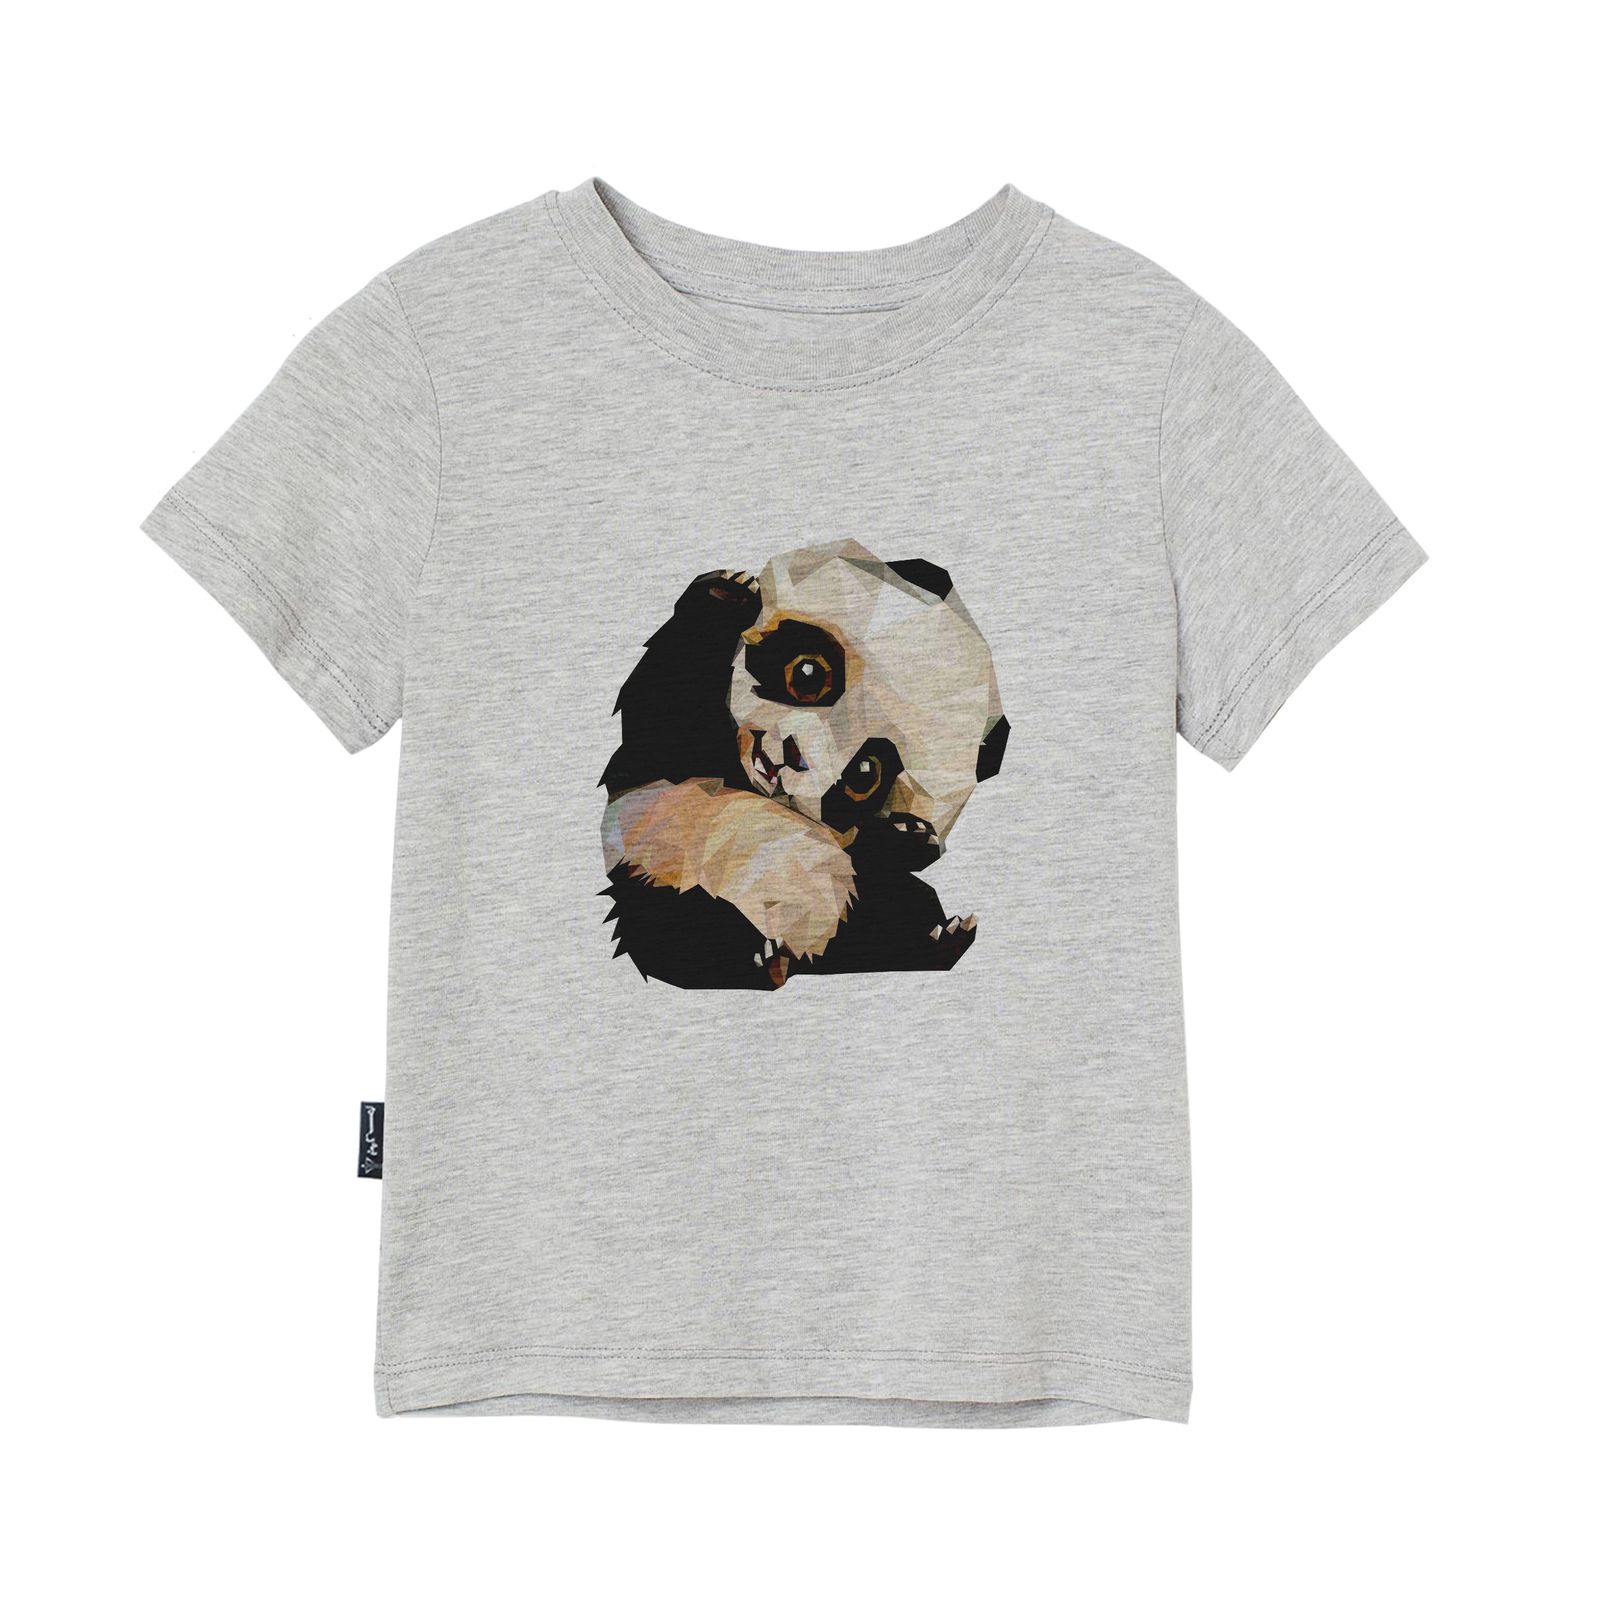 تی شرت آستین کوتاه پسرانه به رسم مدل پاندا کد 1124 -  - 3